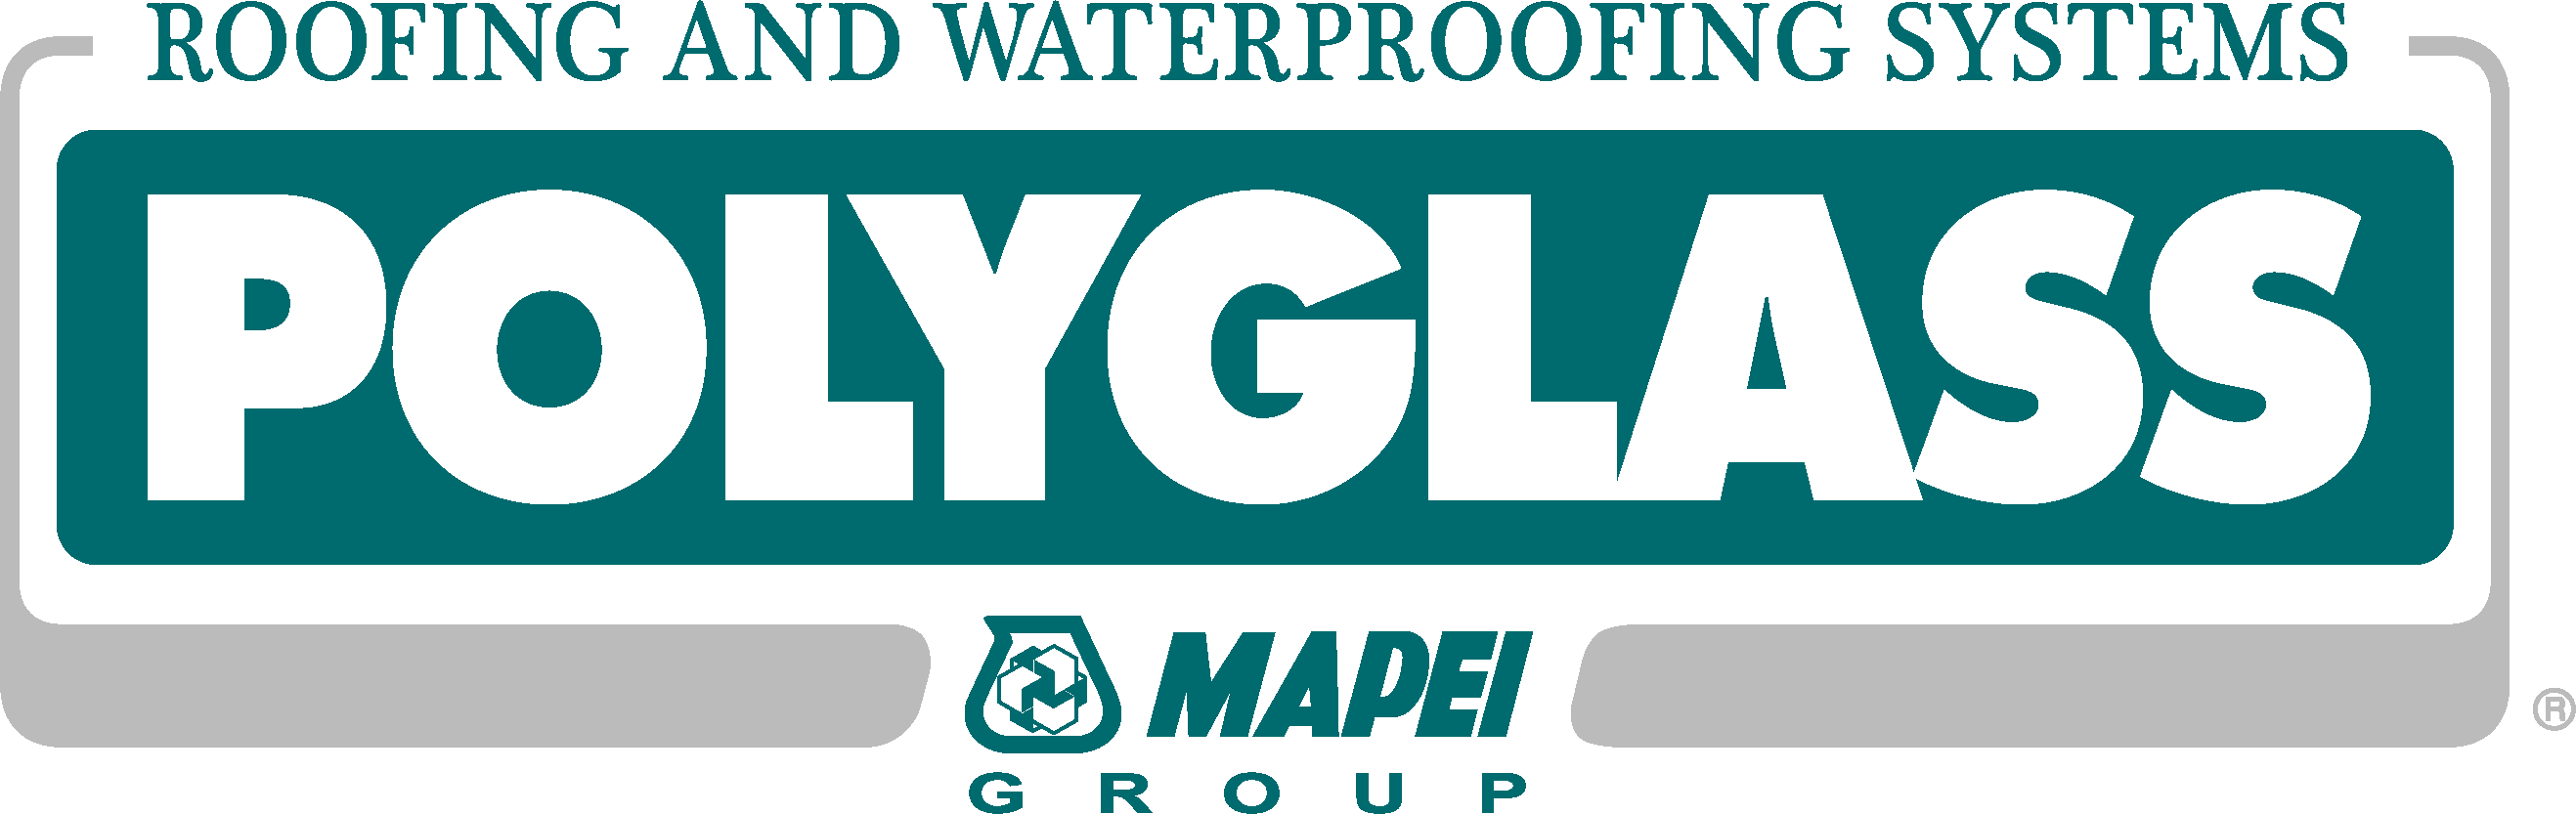 Polyglass Logo